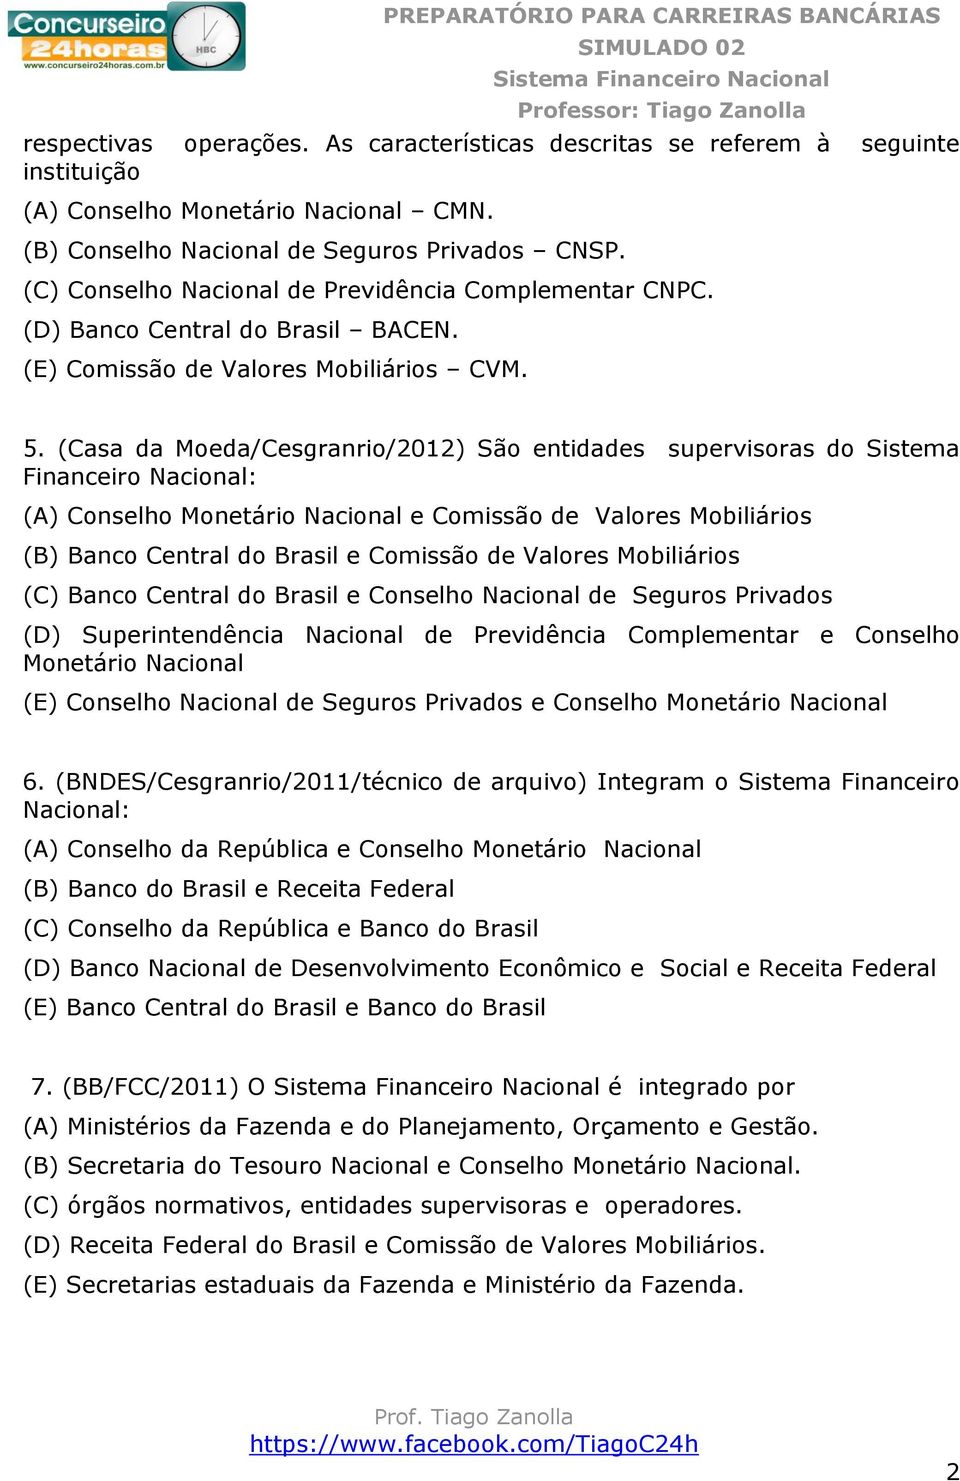 (Casa da Moeda/Cesgranrio/2012) São entidades supervisoras do Sistema Financeiro Nacional: (A) Conselho Monetário Nacional e Comissão de Valores Mobiliários (B) Banco Central do Brasil e Comissão de